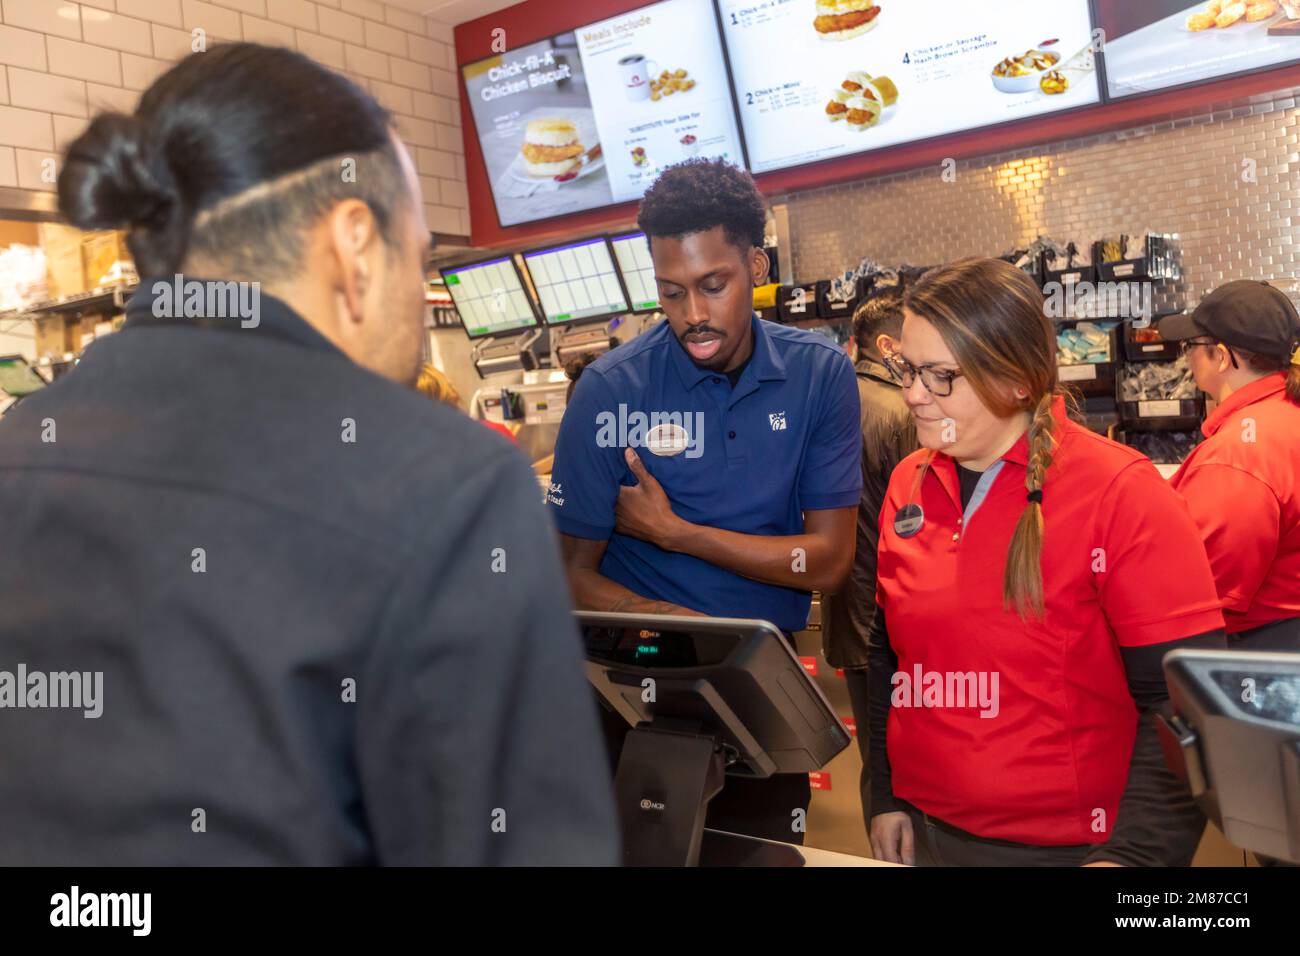 Livonia, Michigan – Arbeiter bei Chick-fil-A am Tag der großen Eröffnung des Restaurants. Arbeiter in roten Hemden sind die neuen Mitarbeiter des Ladens, während diese Stockfoto